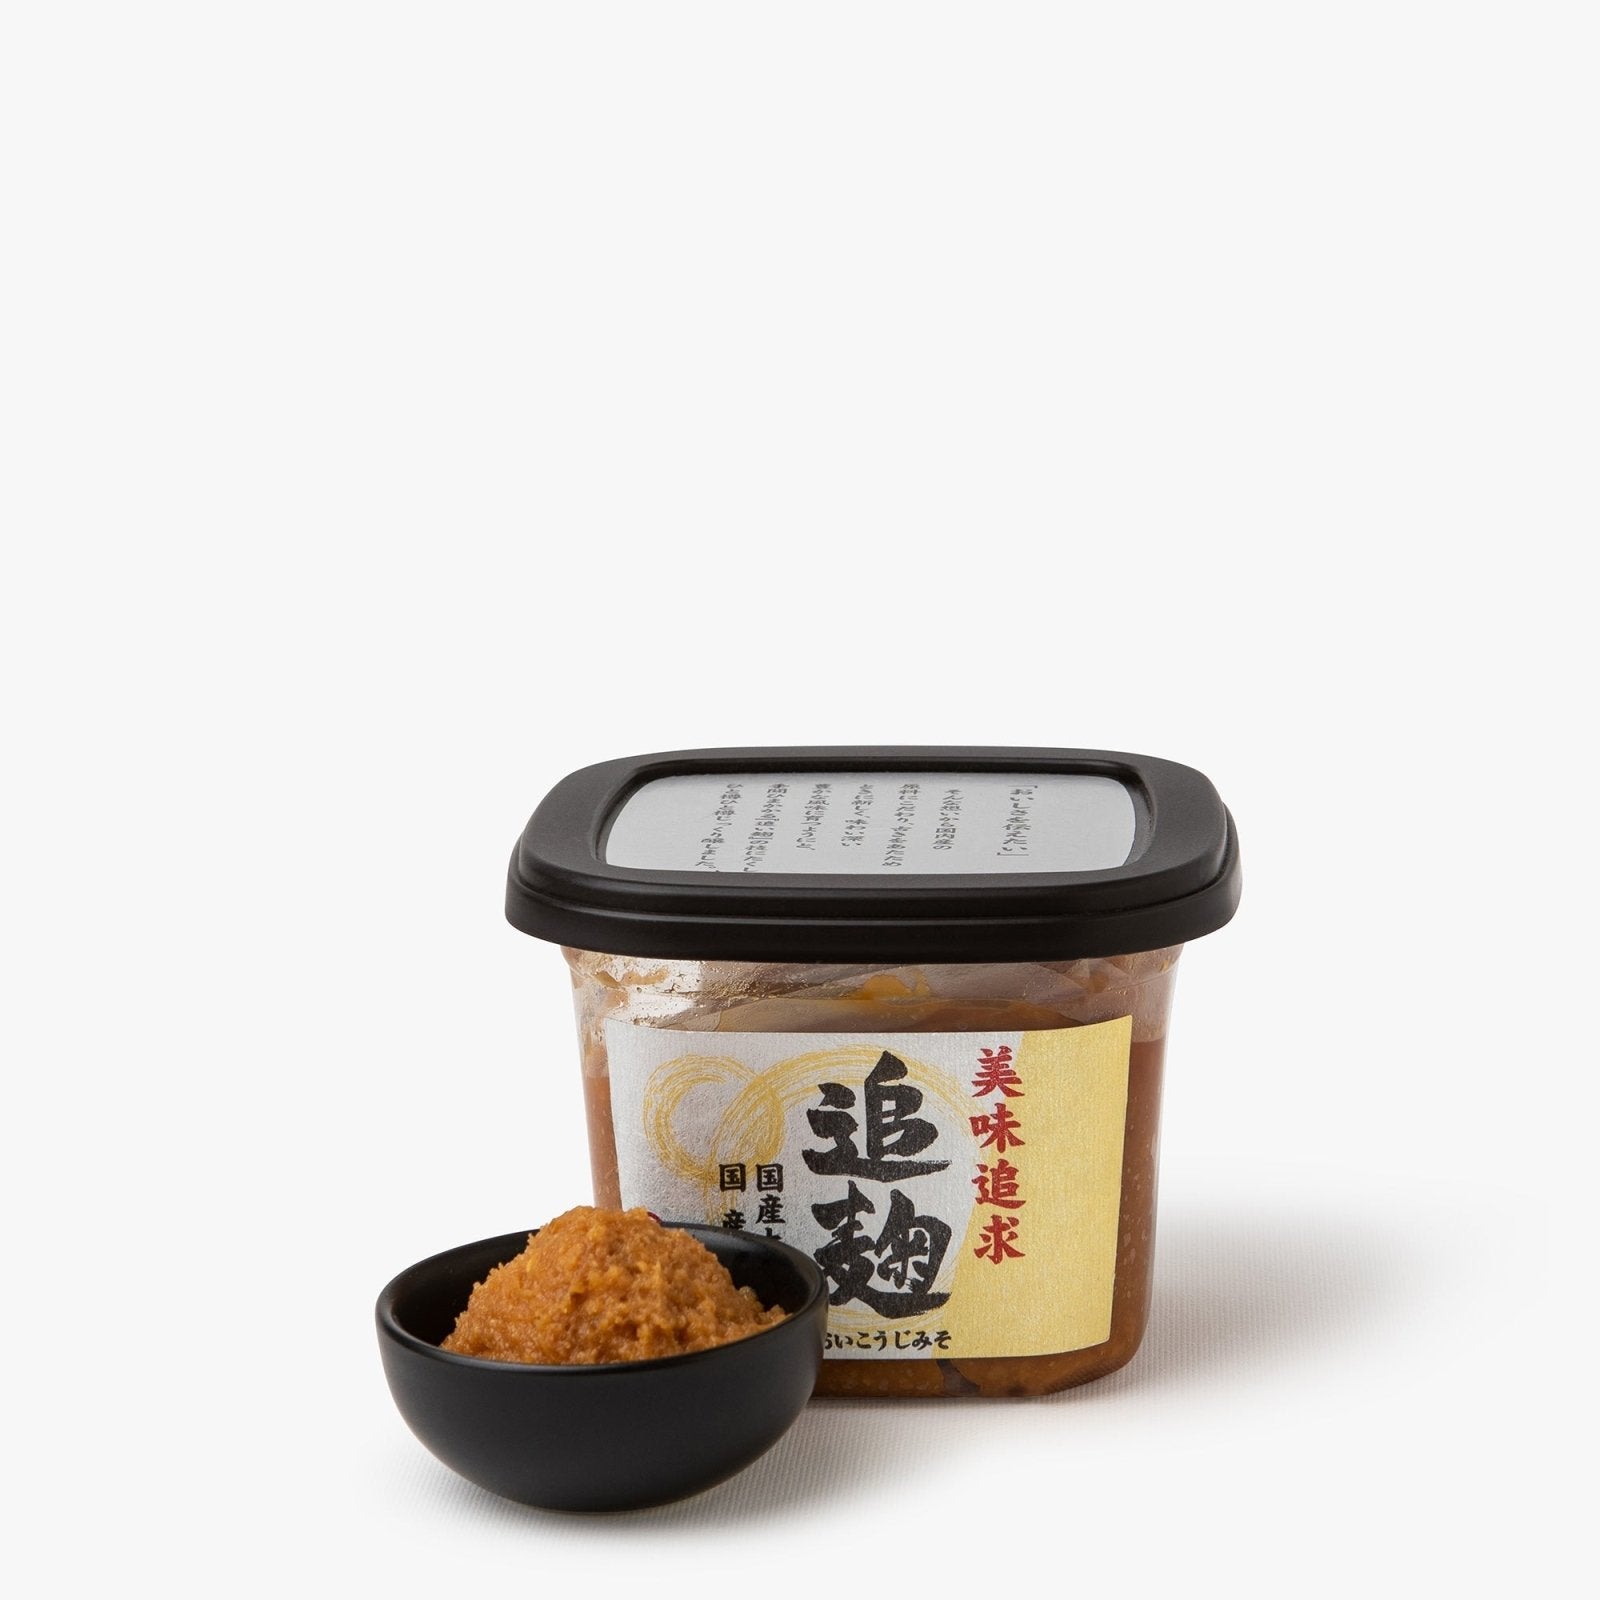 Le miso, la pâte fermentée japonaise qui a conquis les grands